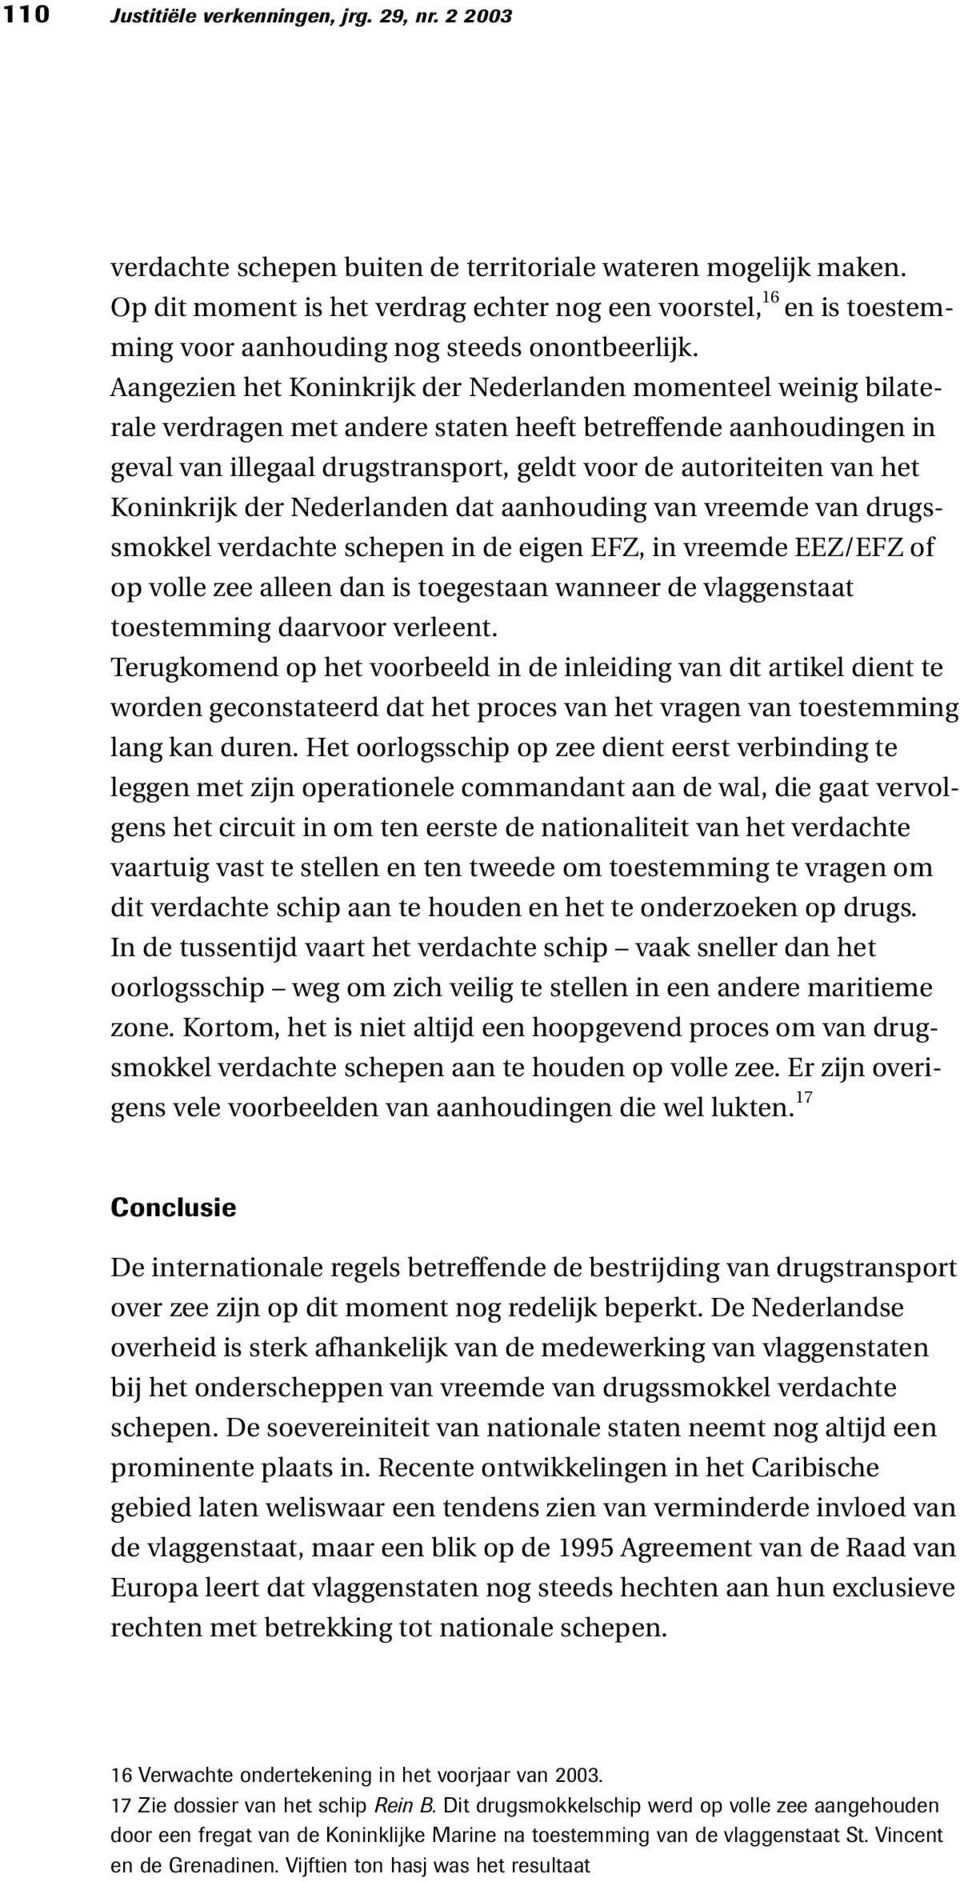 Aangezien het Koninkrijk der Nederlanden momenteel weinig bilaterale verdragen met andere staten heeft betreffende aanhoudingen in geval van illegaal drugstransport, geldt voor de autoriteiten van